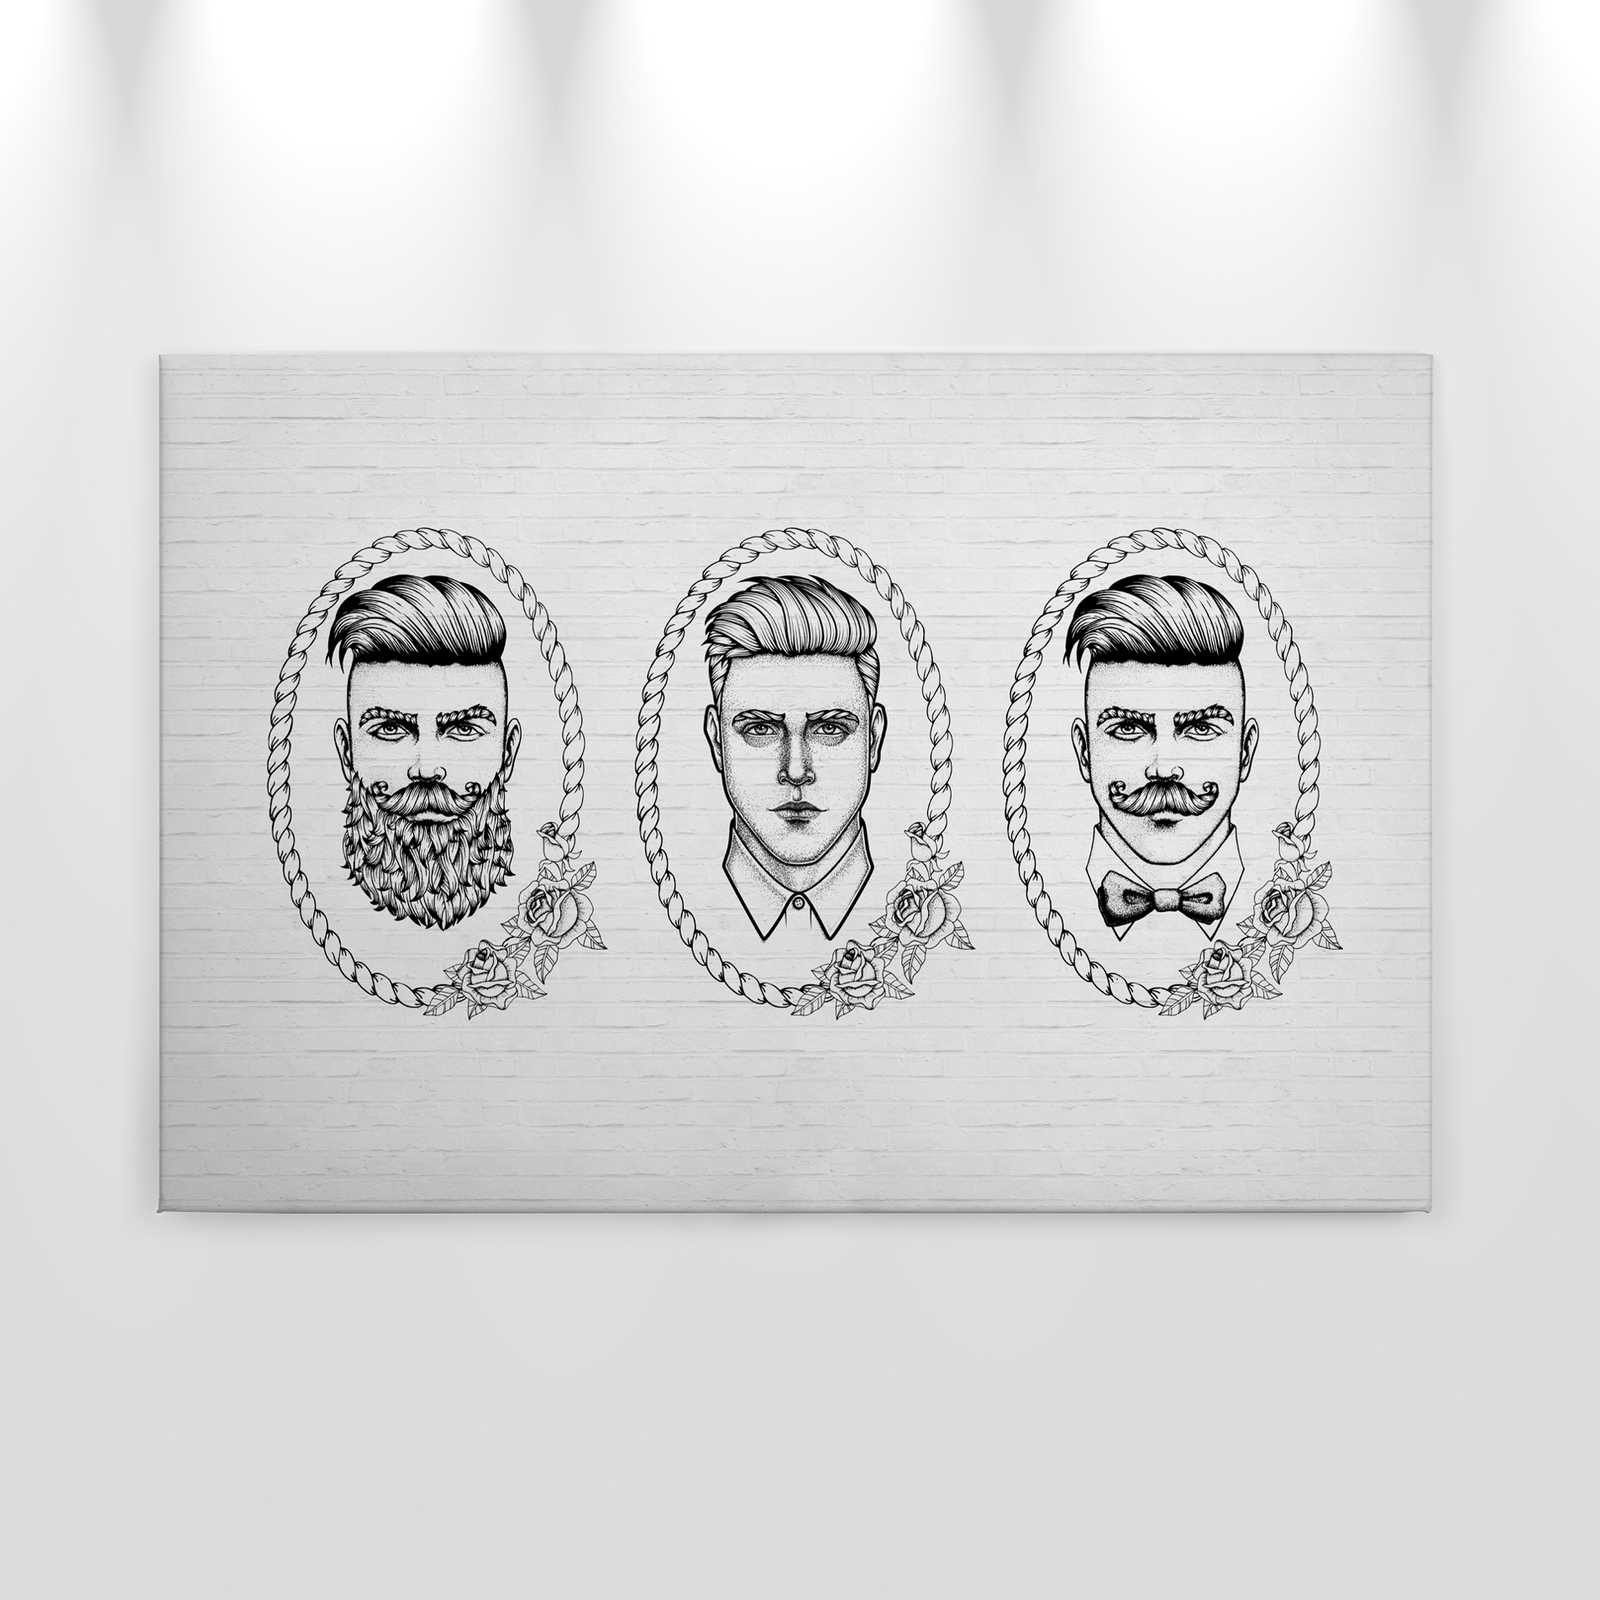             Pintura sobre lienzo en blanco y negro con retratos de hombres en estilo cómic - 0,90 m x 0,60 m
        